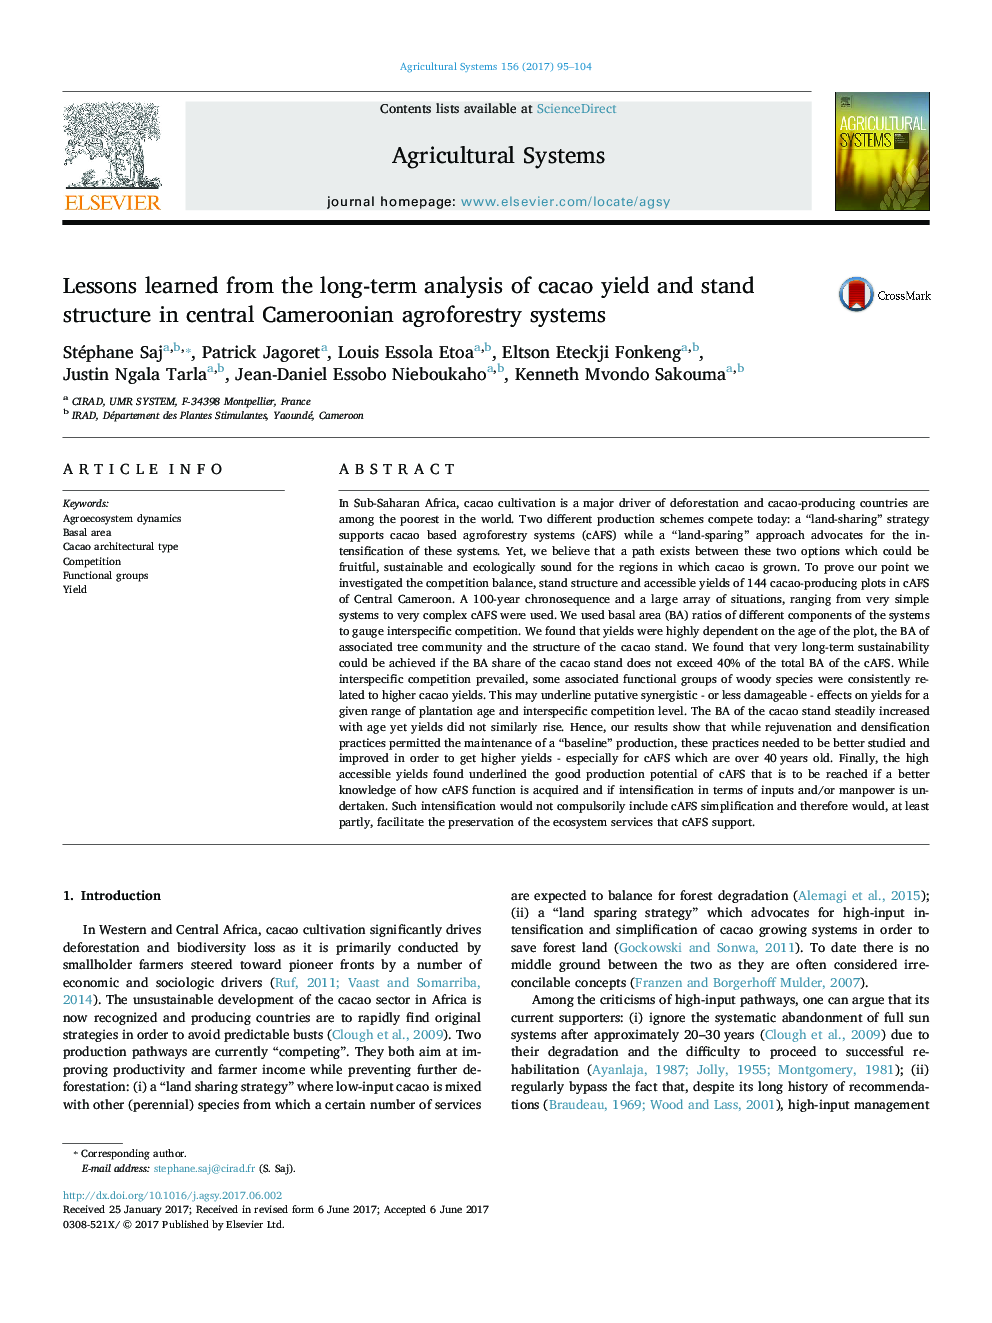 درسهای آموخته شده در تجزیه و تحلیل طولانی مدت عملکرد کاکتوس و ساختار پایه در سیستم های جنگلداری مرکزی کامرون 